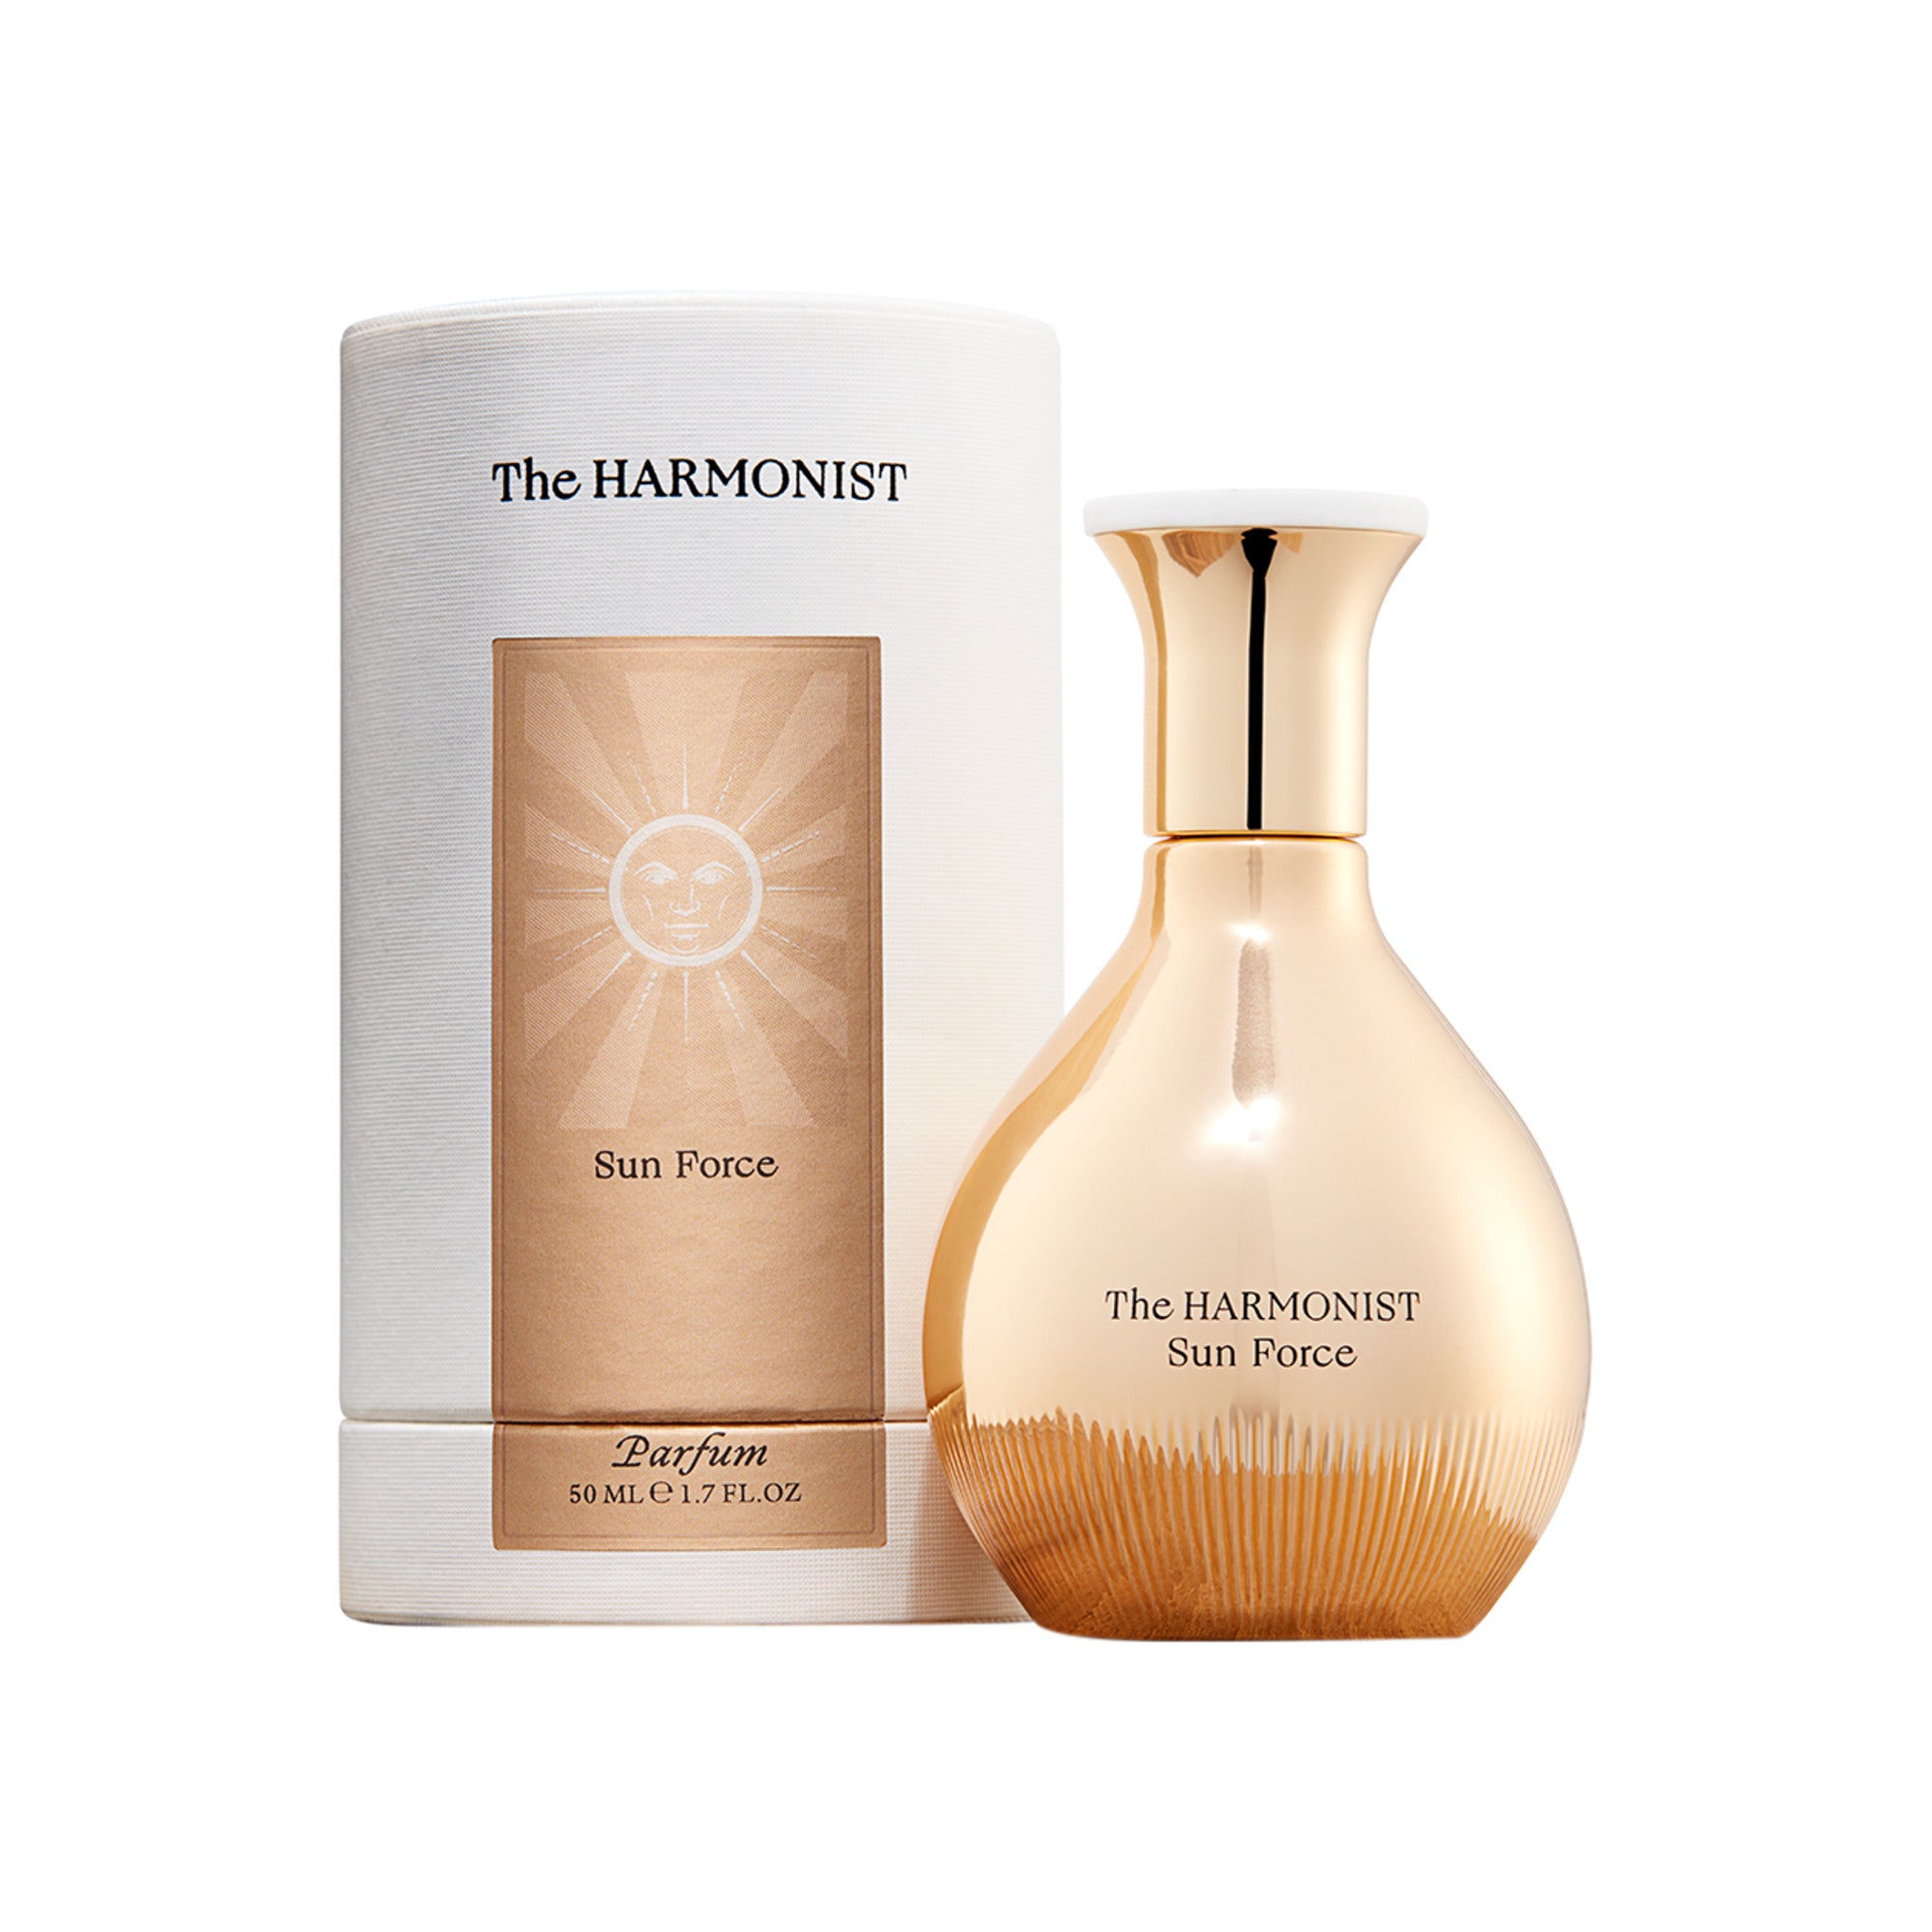 The Harmonist Sunforce Parfum main image.